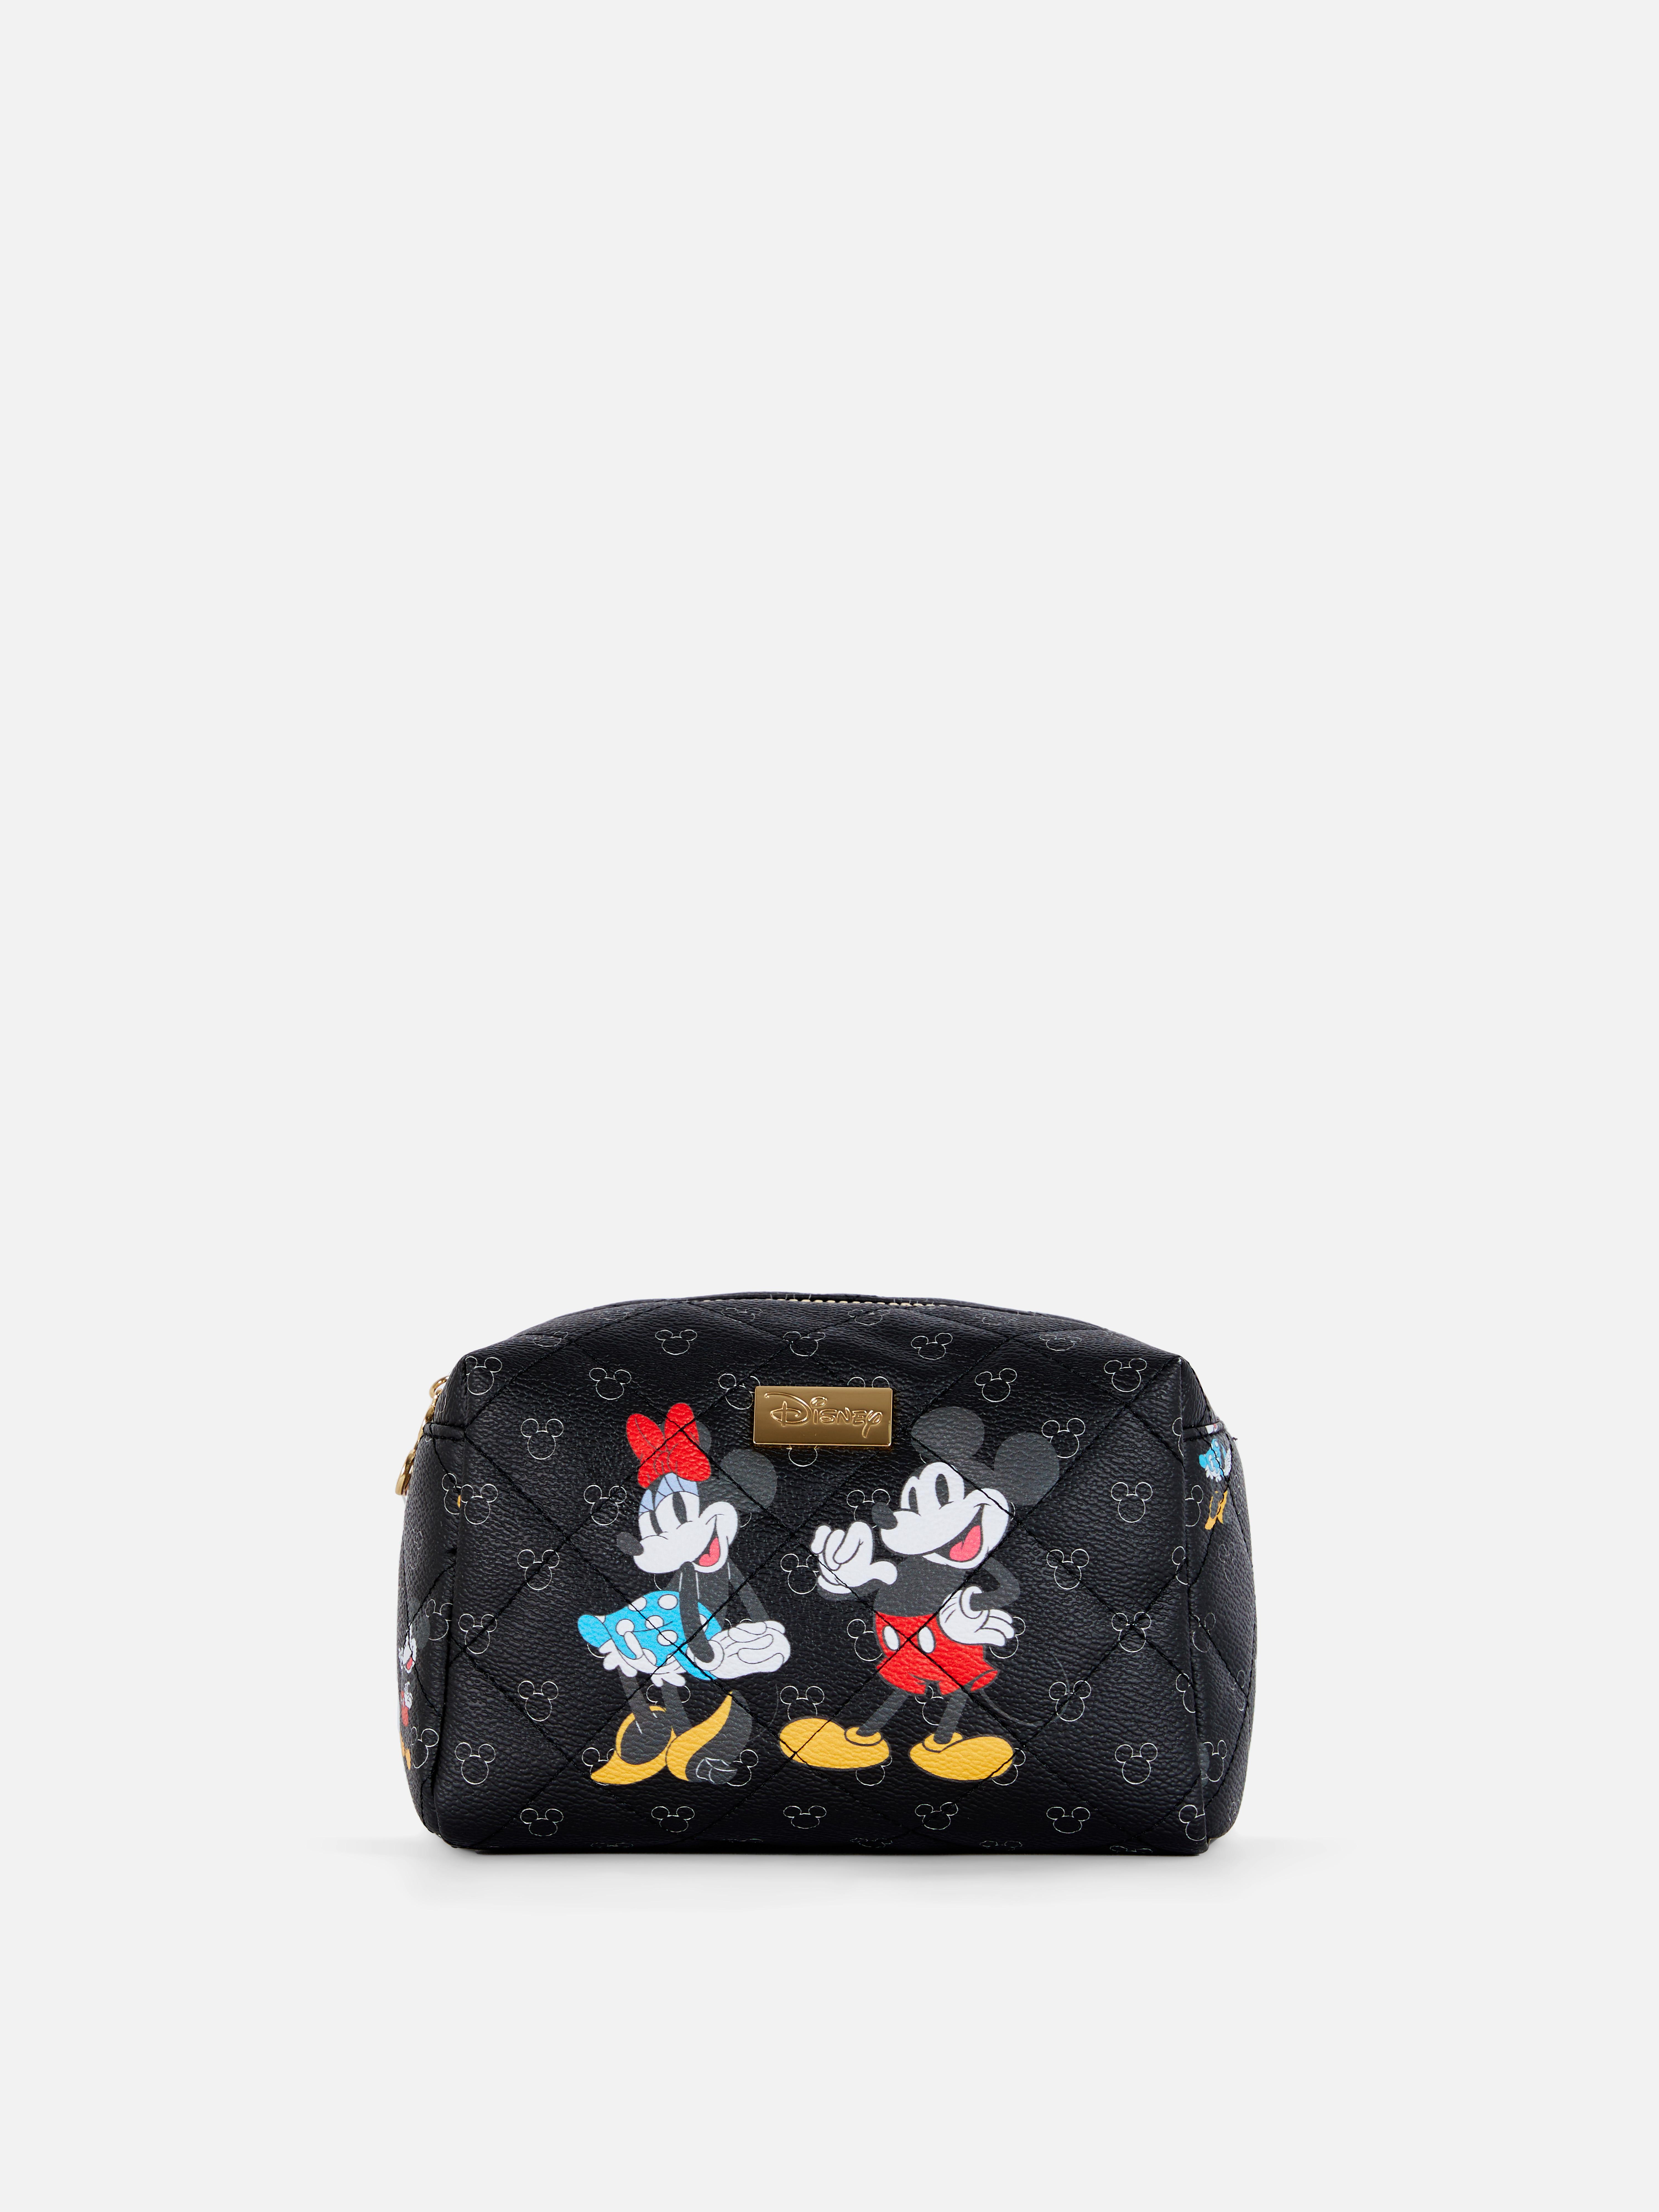 Disney's Minnie Mouse Faux Leather Makeup Bag